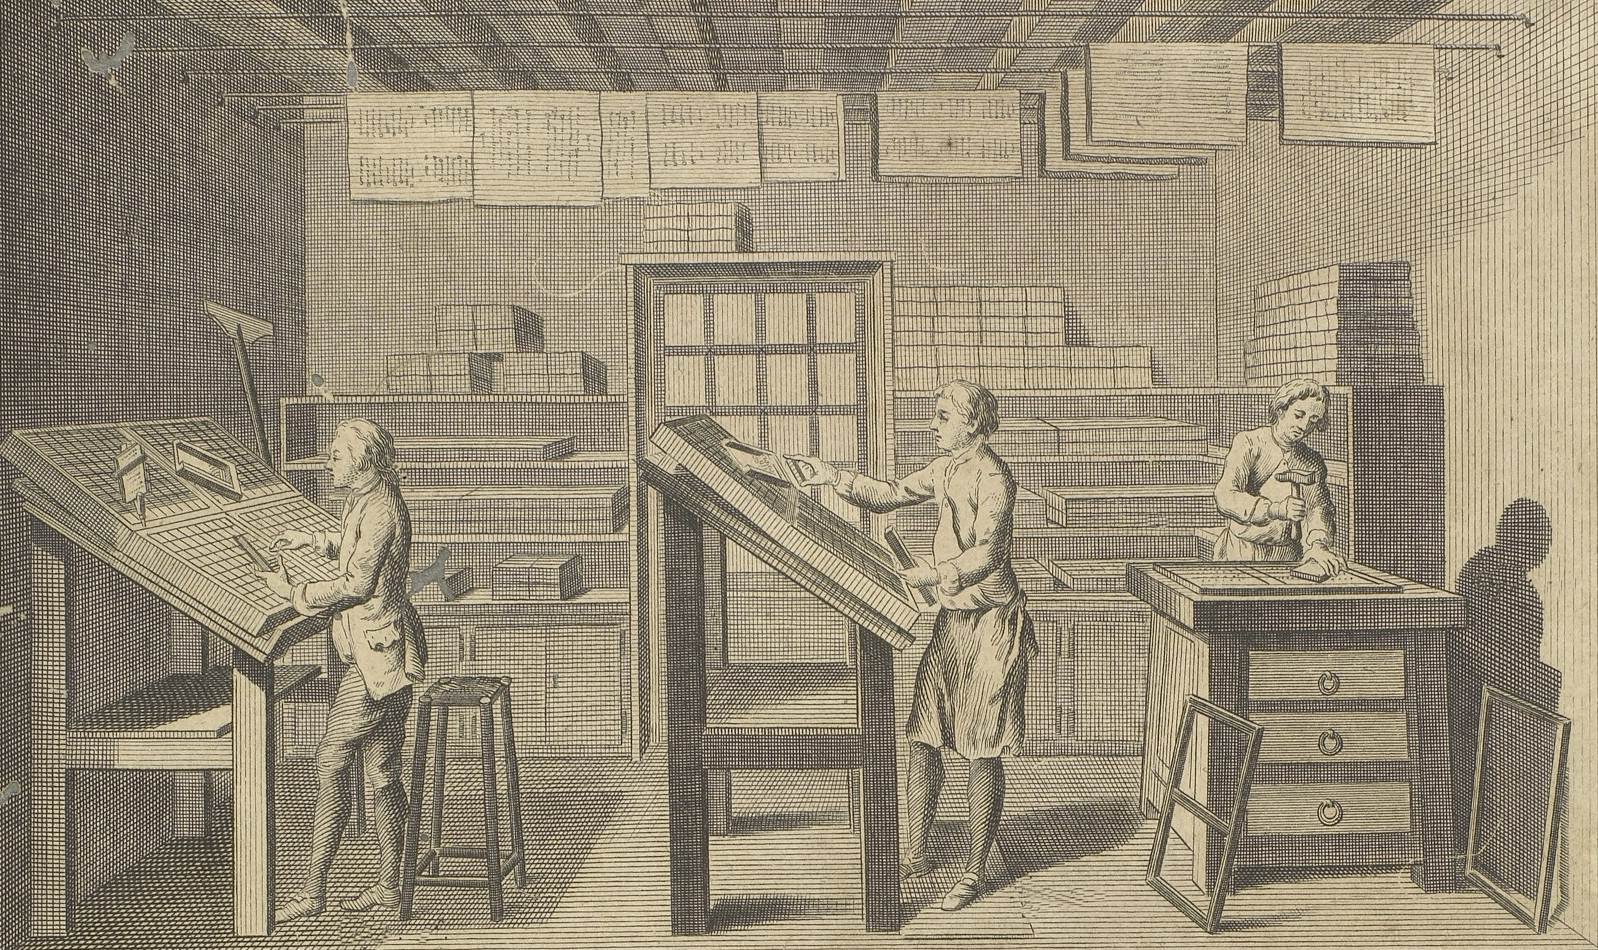 Gravura mostrando as diversas etapas do processo de impressão, incluída na Enciclopédia iluminista de Diderot e d’Alembert, publicada em Paris, de 1751 a 1772